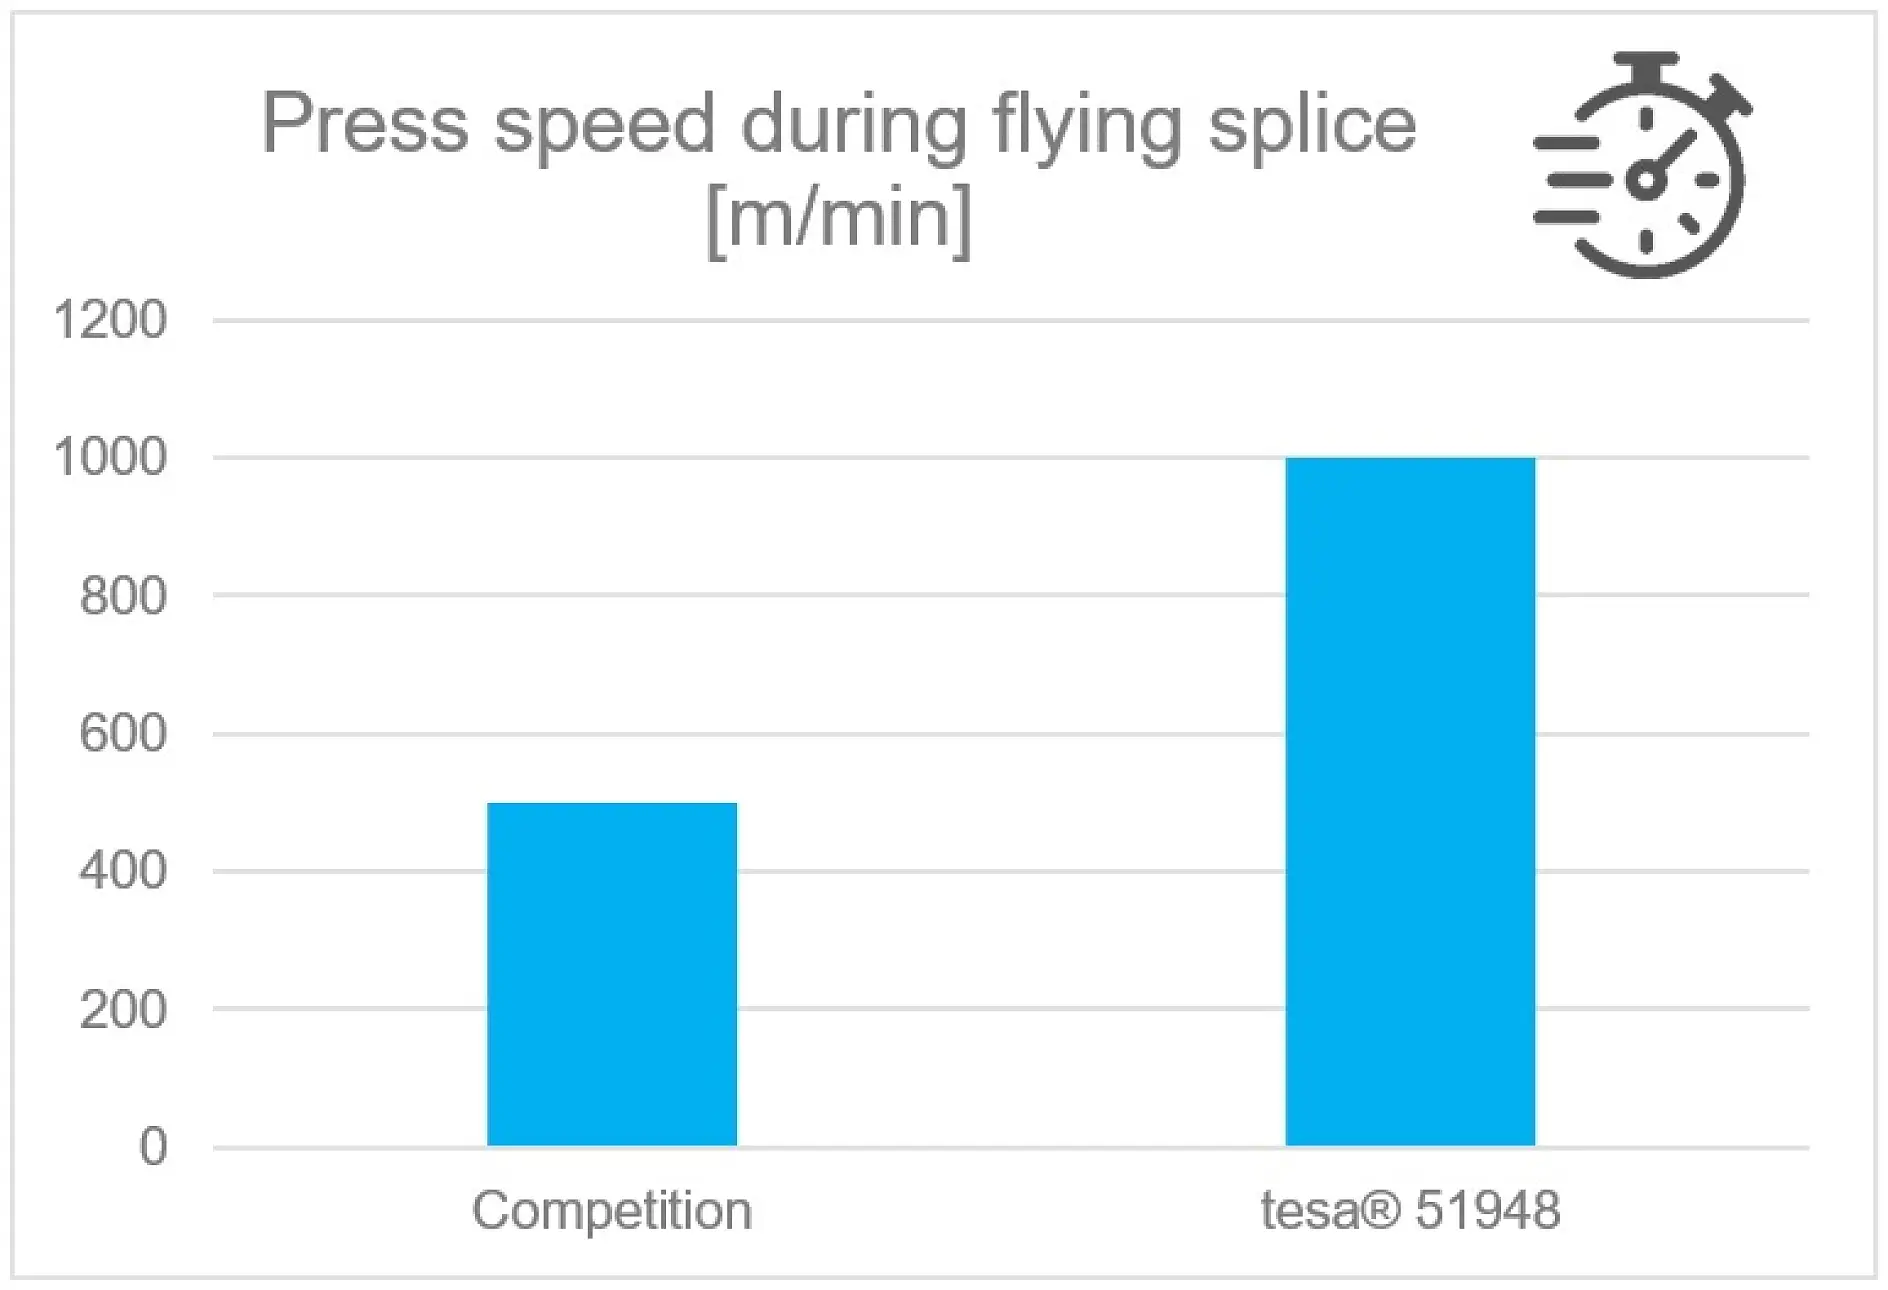 Press speed